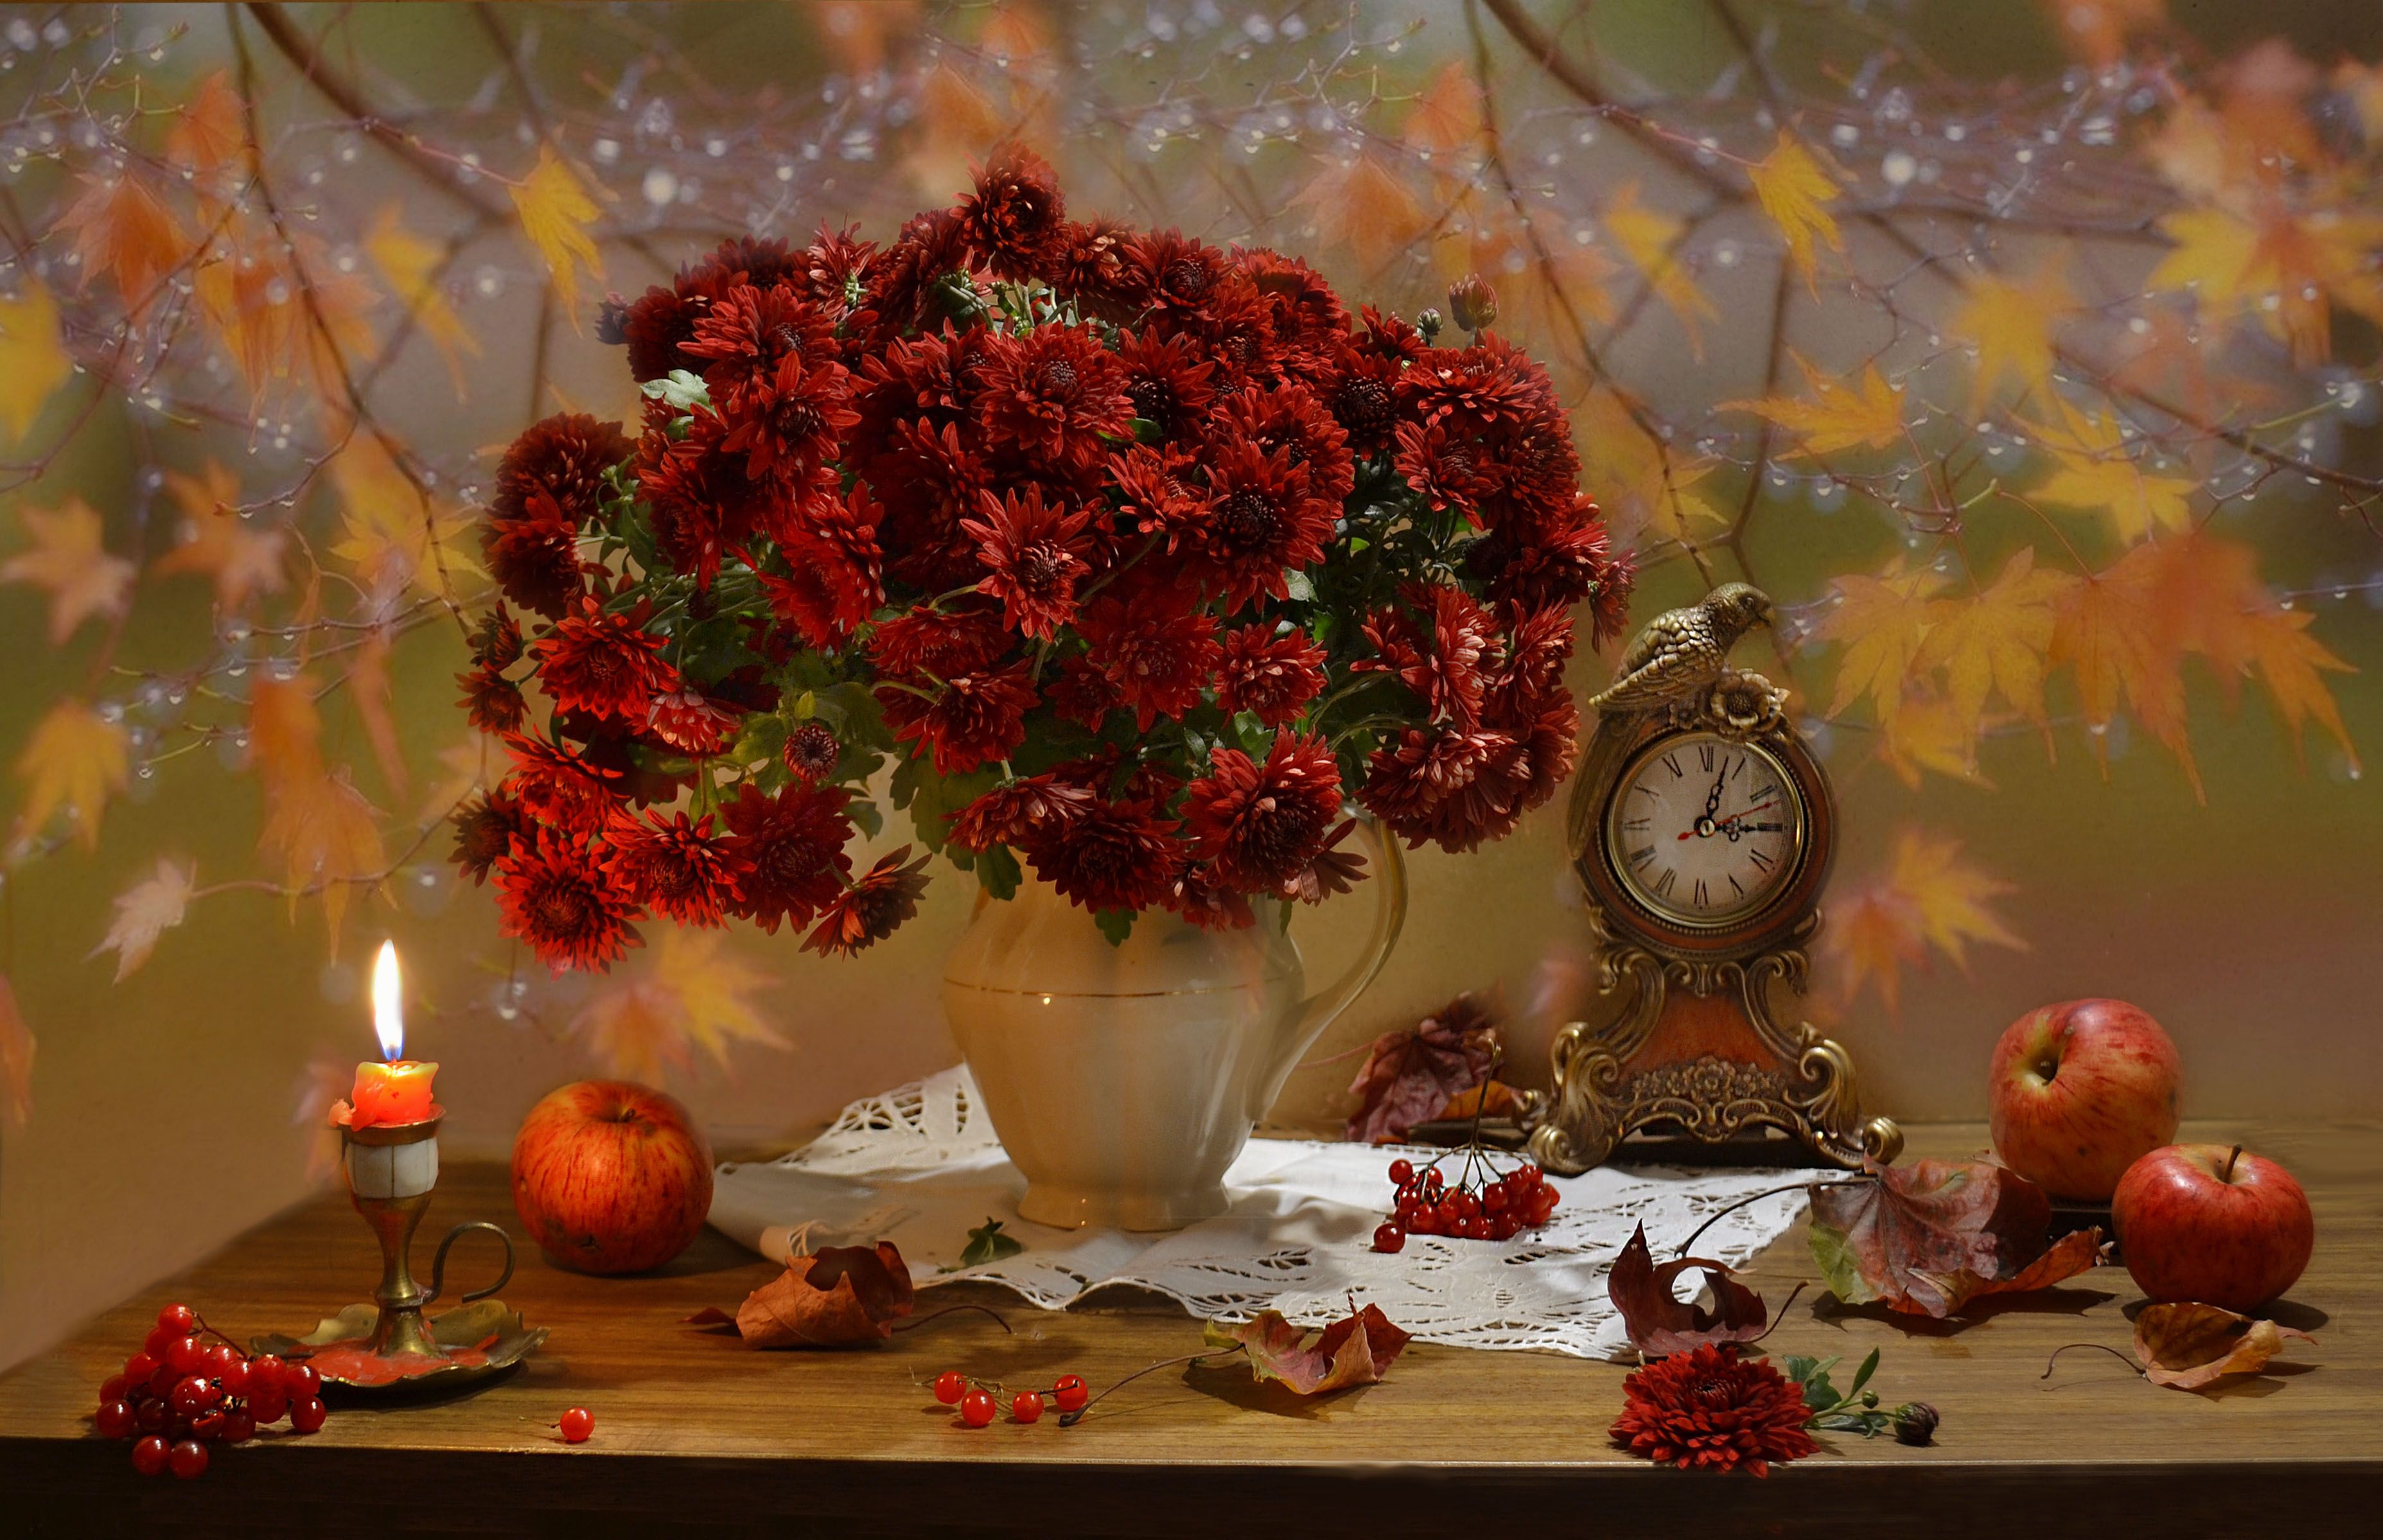 still life, натюрморт, цветы, фото натюрморт,  осень, октябрь,кленовые листья, калина, свеча, часы, настроение, хризантемы, Колова Валентина